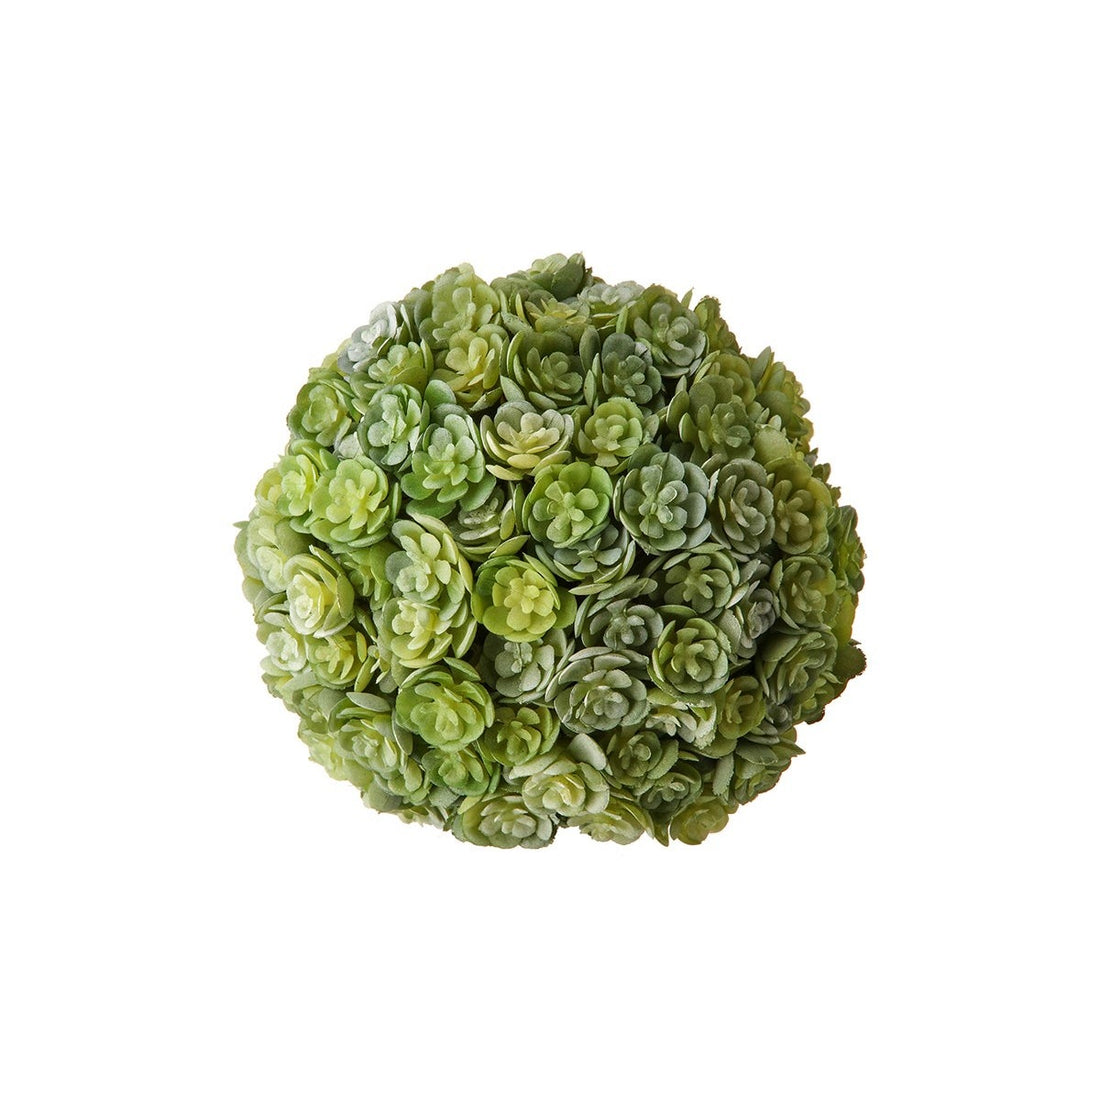 Green Succulent Ball